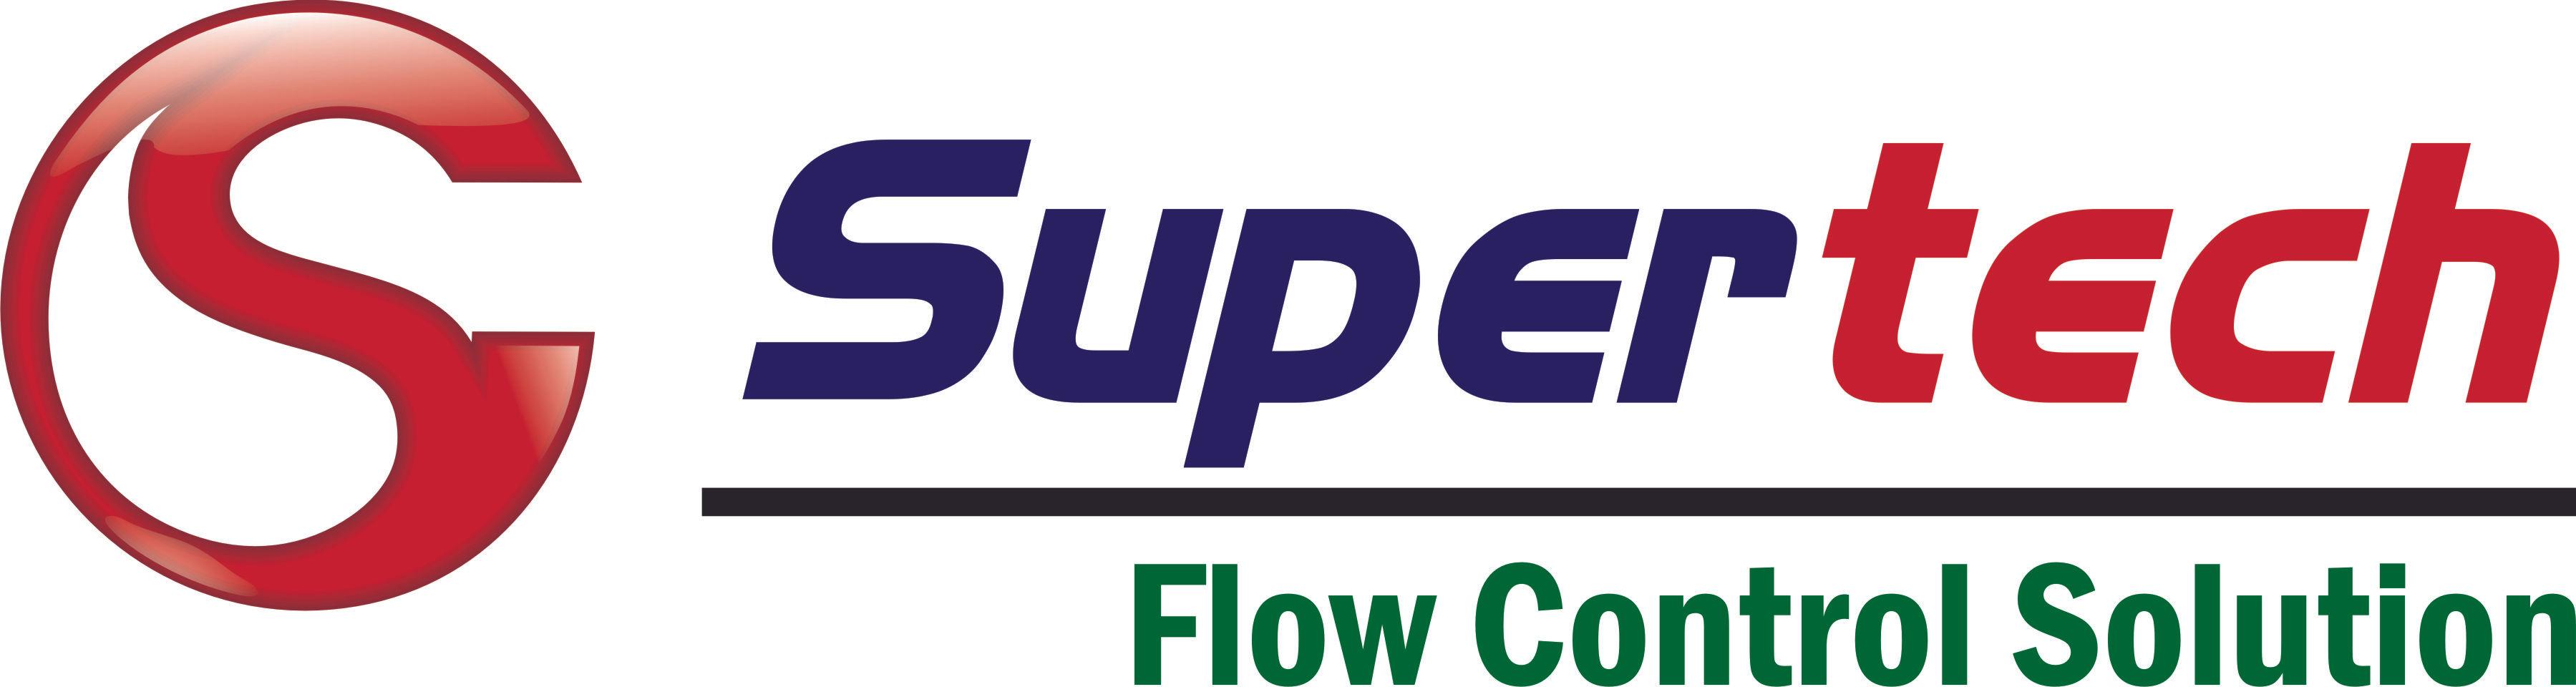 Supertech Flow Control